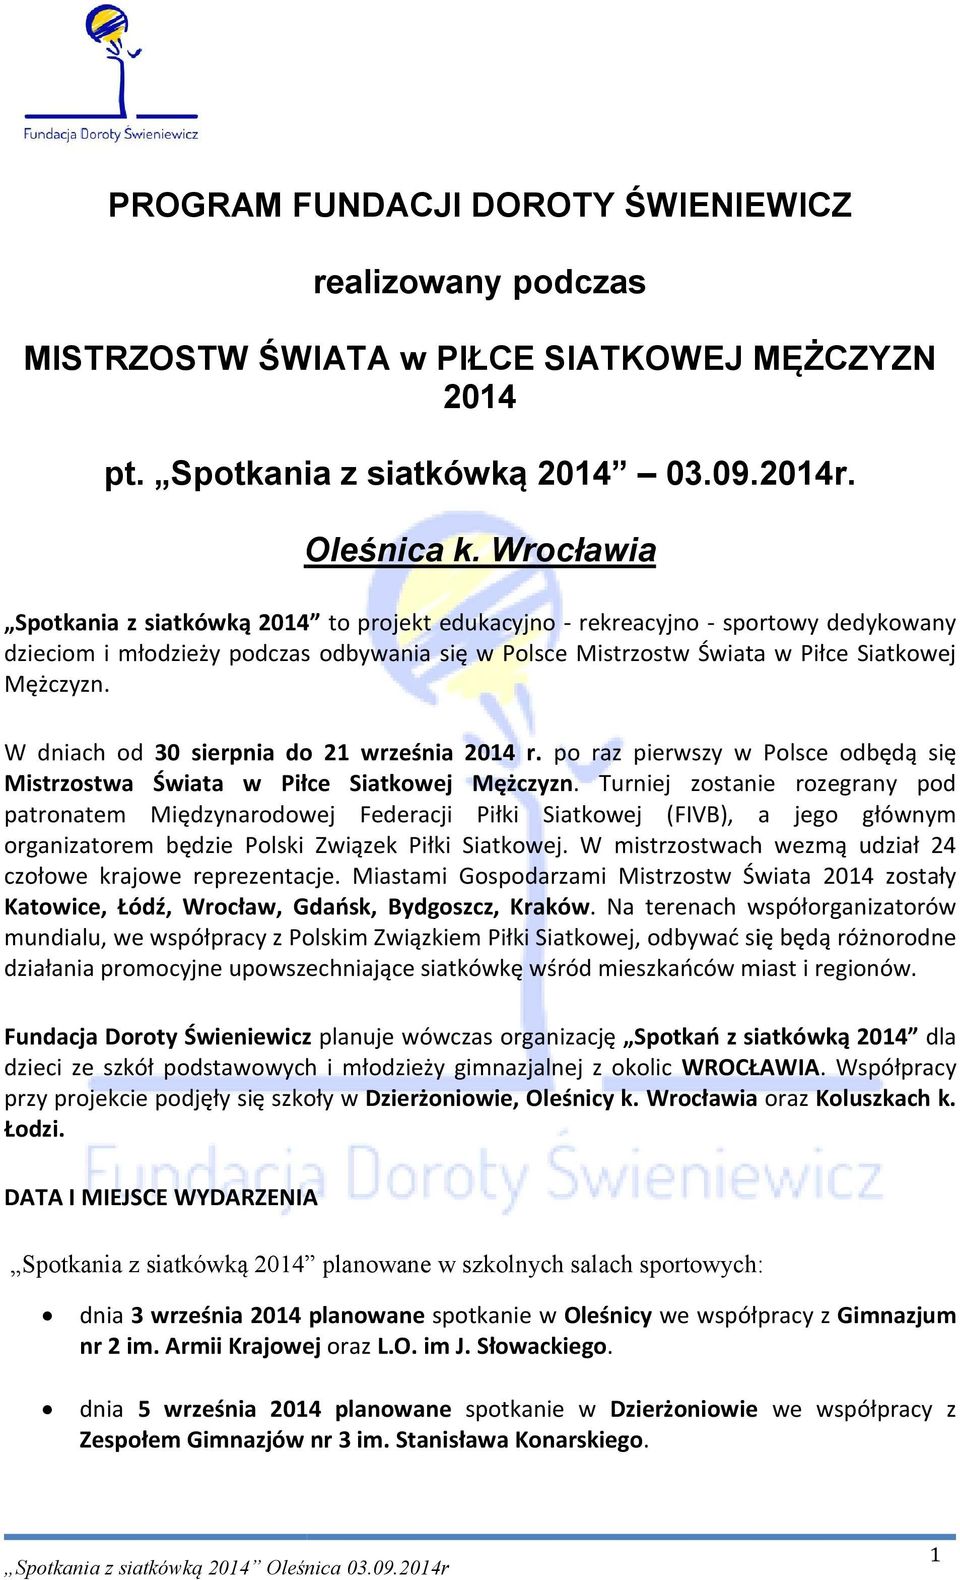 W dniach od 30 sierpnia do 21 września 2014 r. po raz pierwszy w Polsce odbędą się Mistrzostwa Świata w Piłce Siatkowej Mężczyzn.